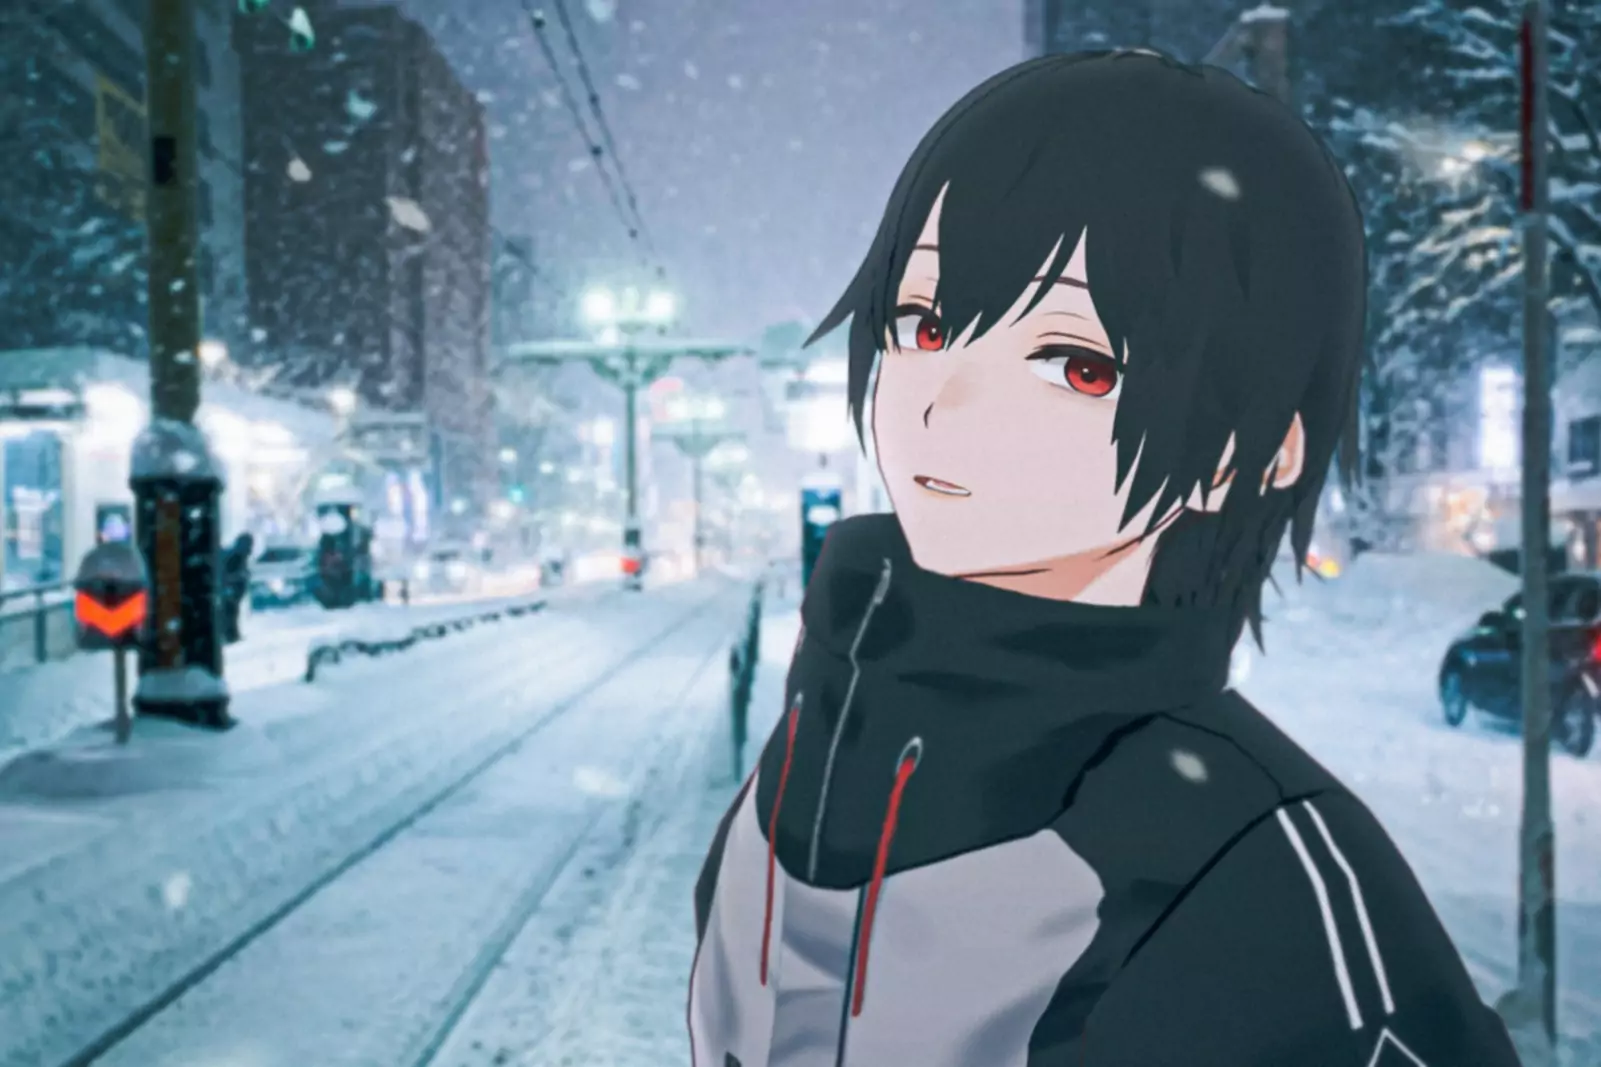 Animācijas tēls pozē sniegotas ielas priekšā